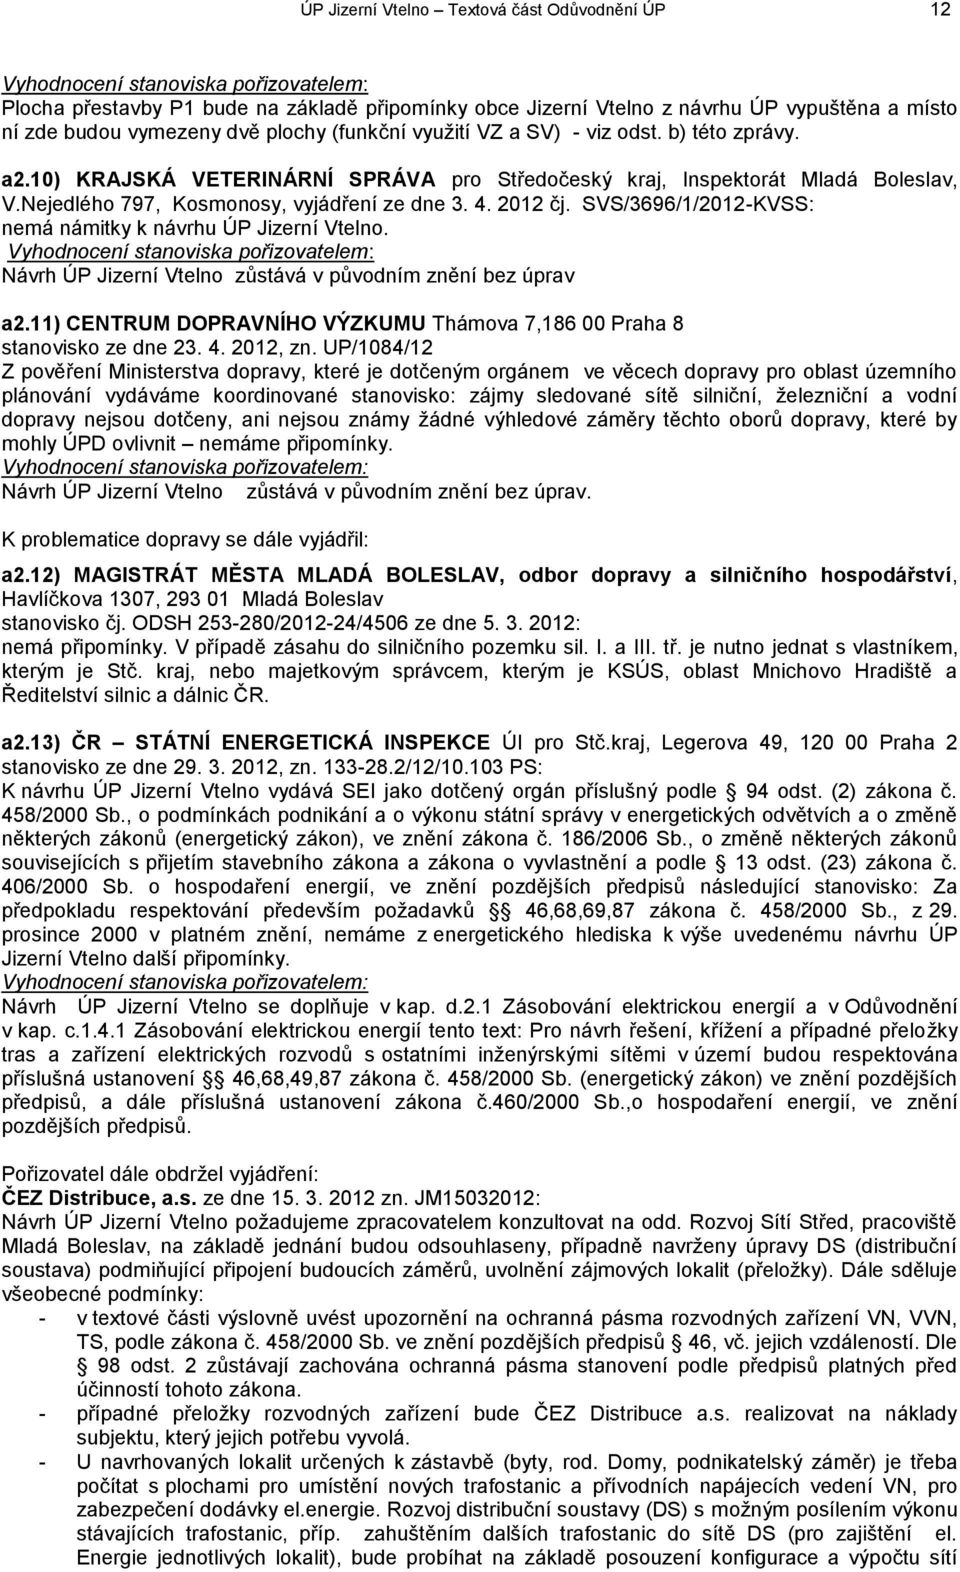 Nejedlého 797, Kosmonosy, vyjádření ze dne 3. 4. 2012 čj. SVS/3696/1/2012-KVSS: nemá námitky k návrhu ÚP Jizerní Vtelno.